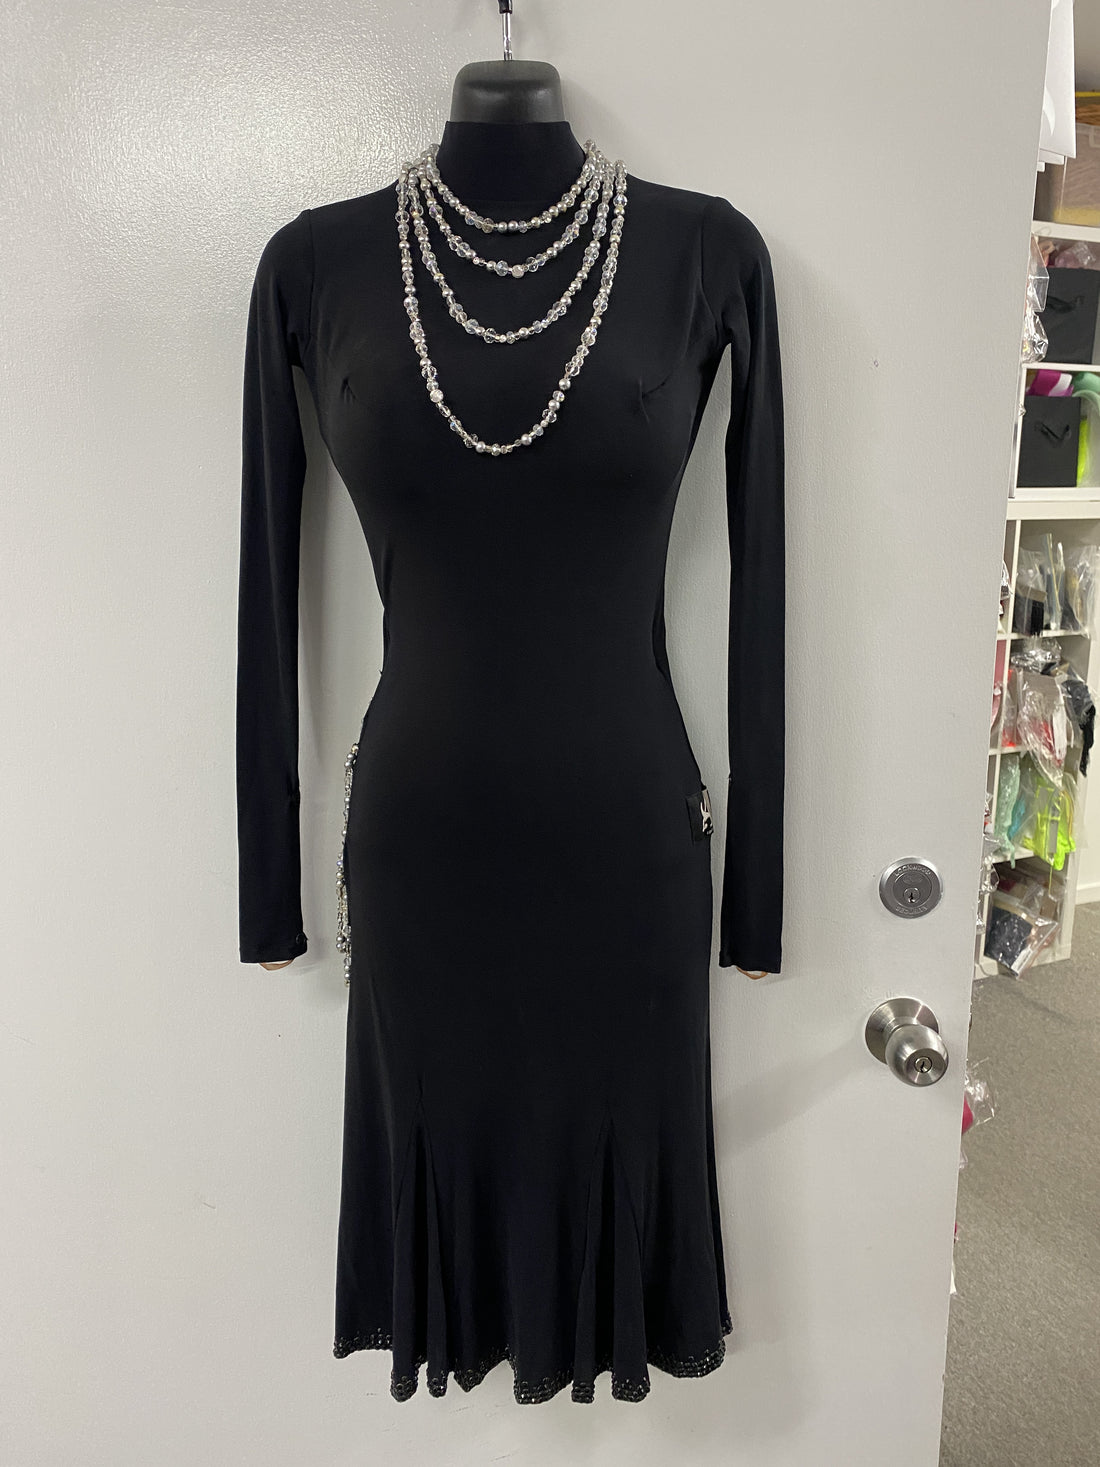 Pre Loved Black Latin Dress (Size 6-8)